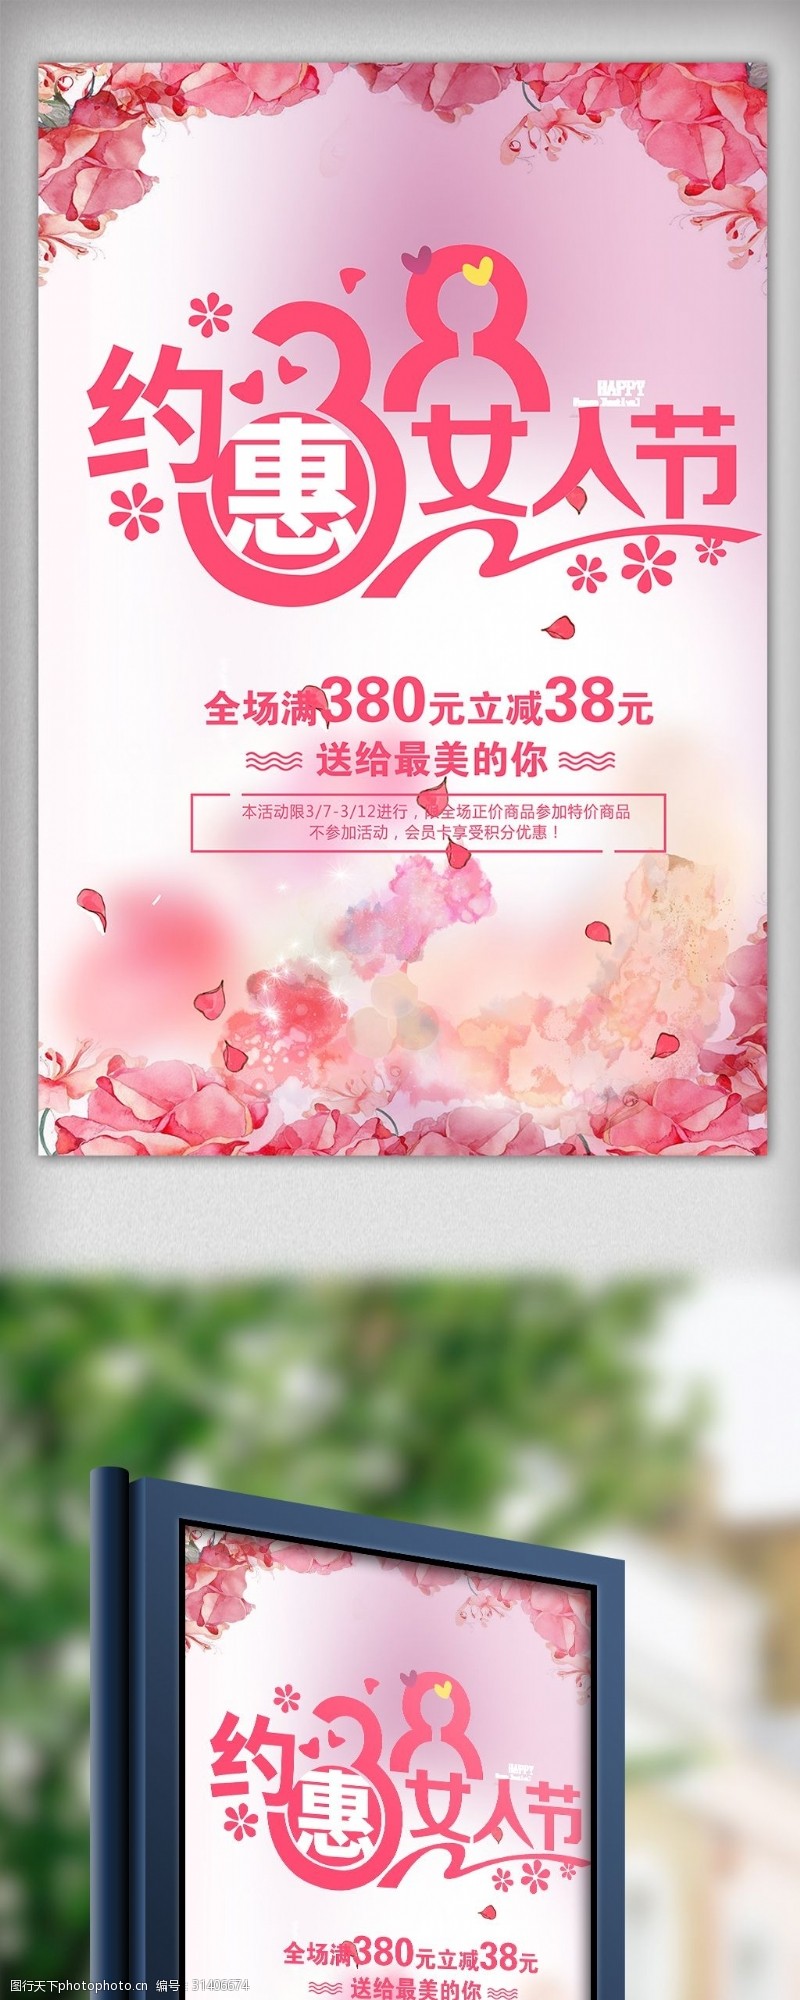 女神节唯美浪漫女王节节日宣传海报模板